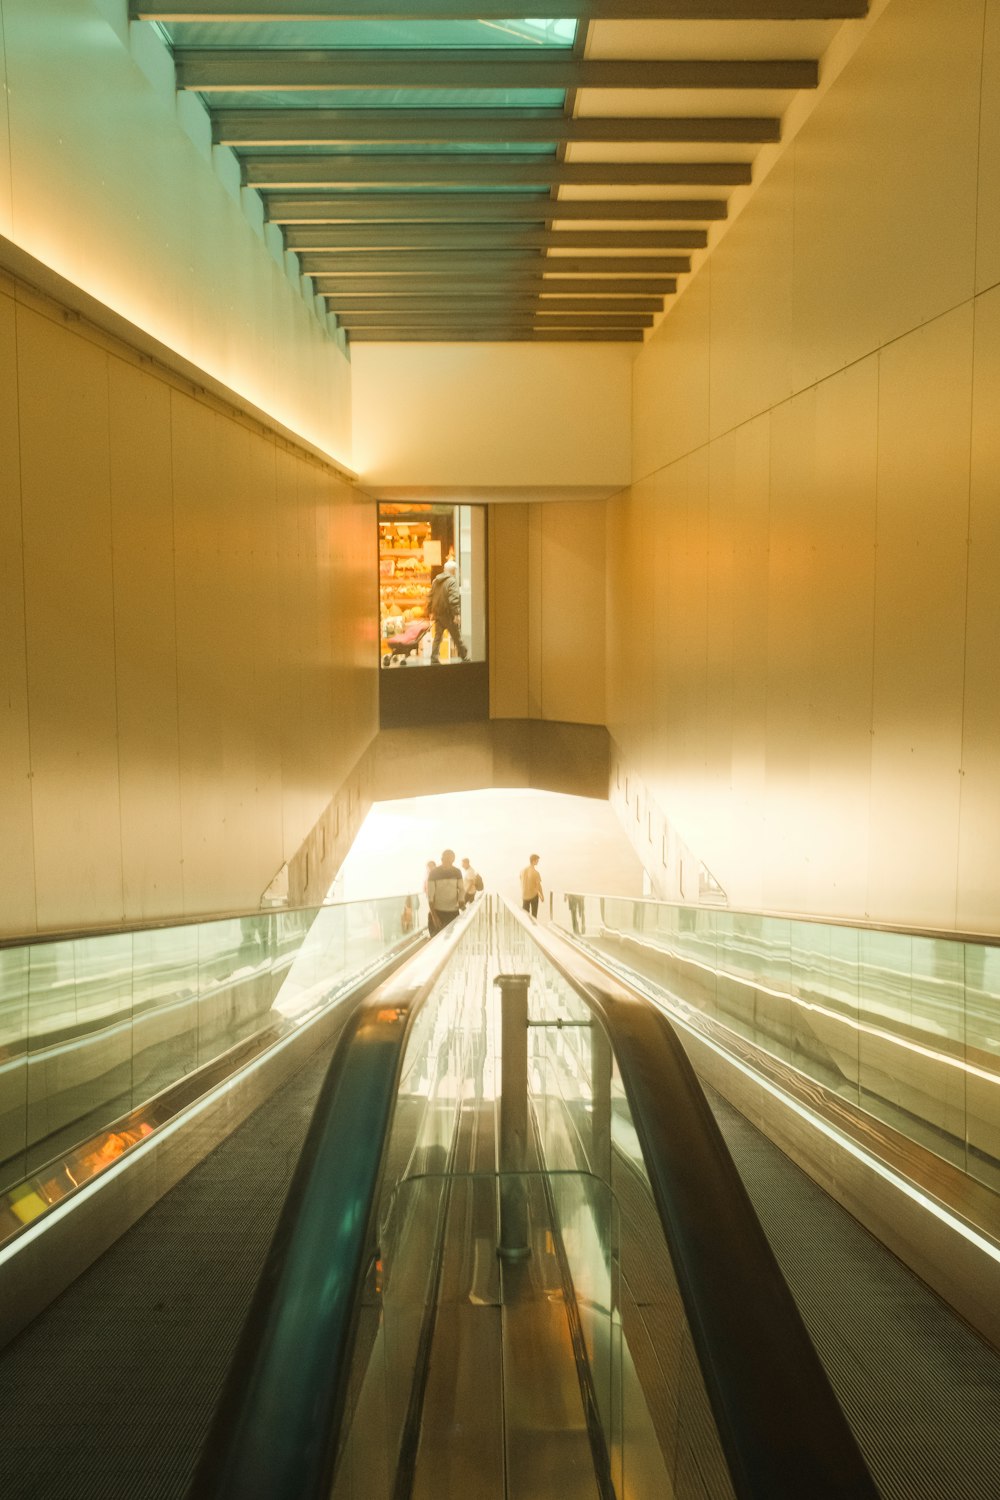 a person riding an escalator in a building